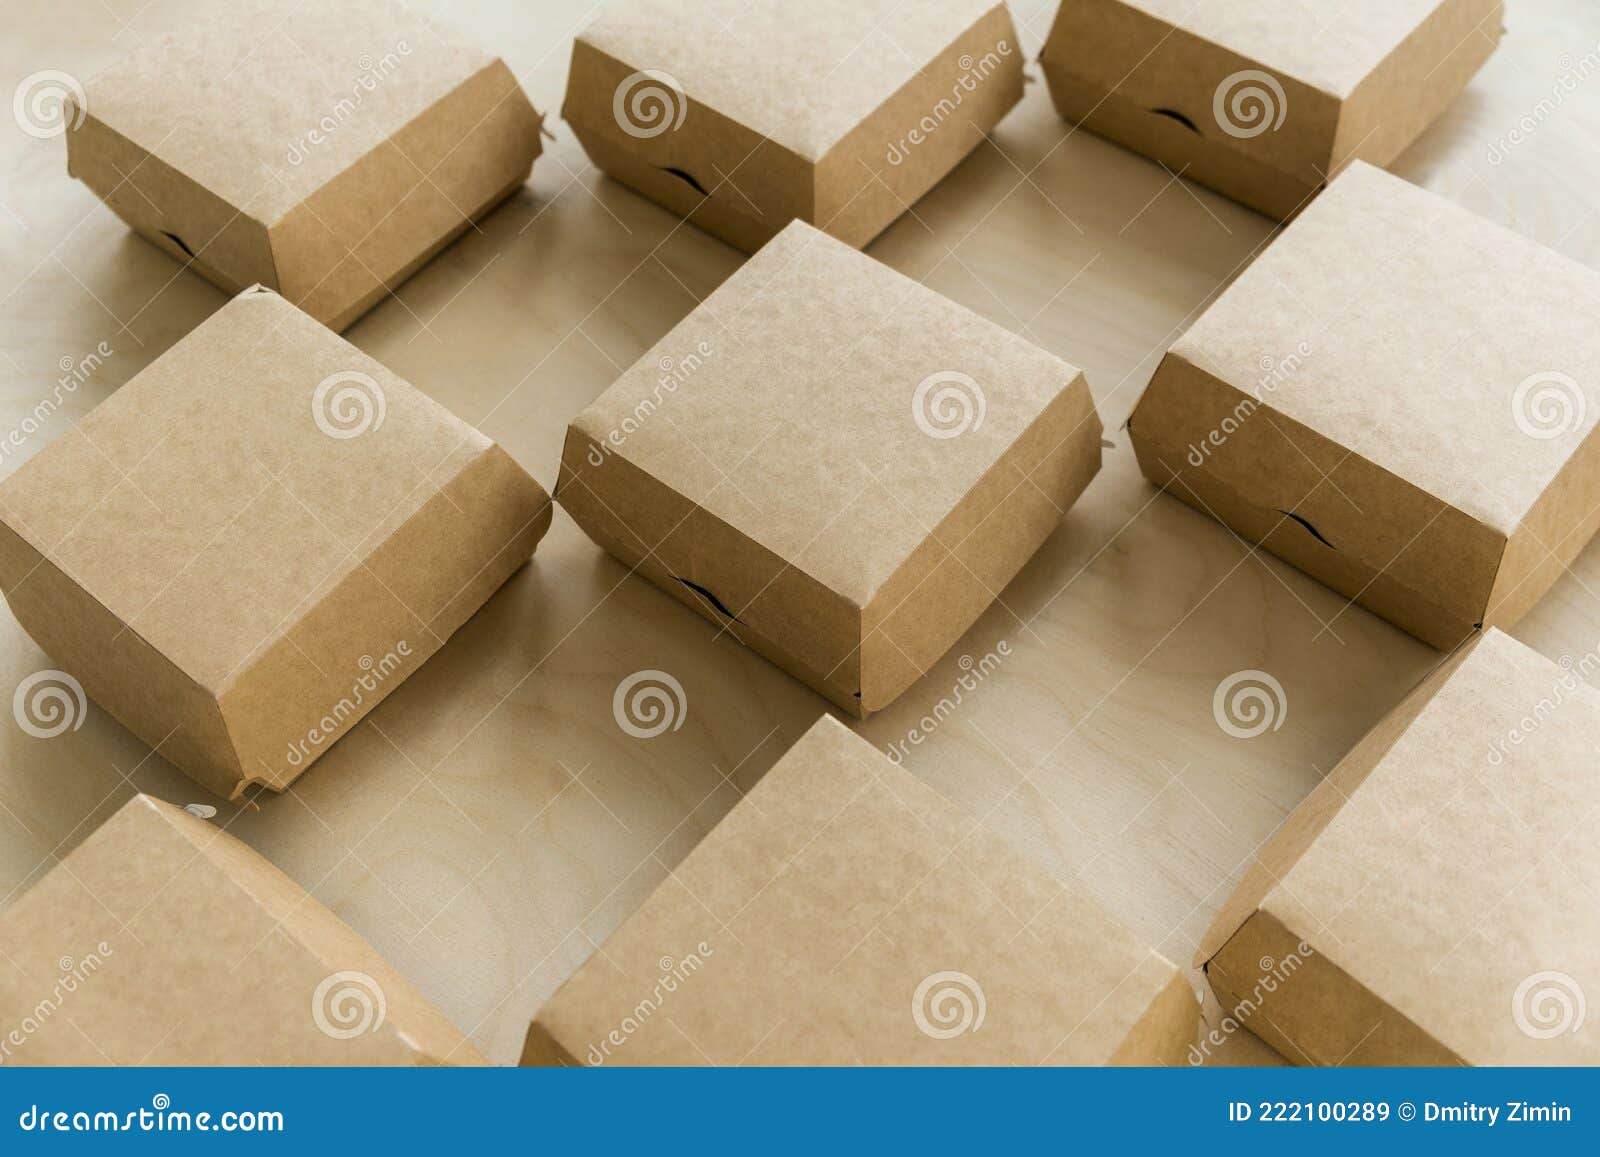 Cajas de cartón y sobres para empaquetar paquetes aislados en blanco